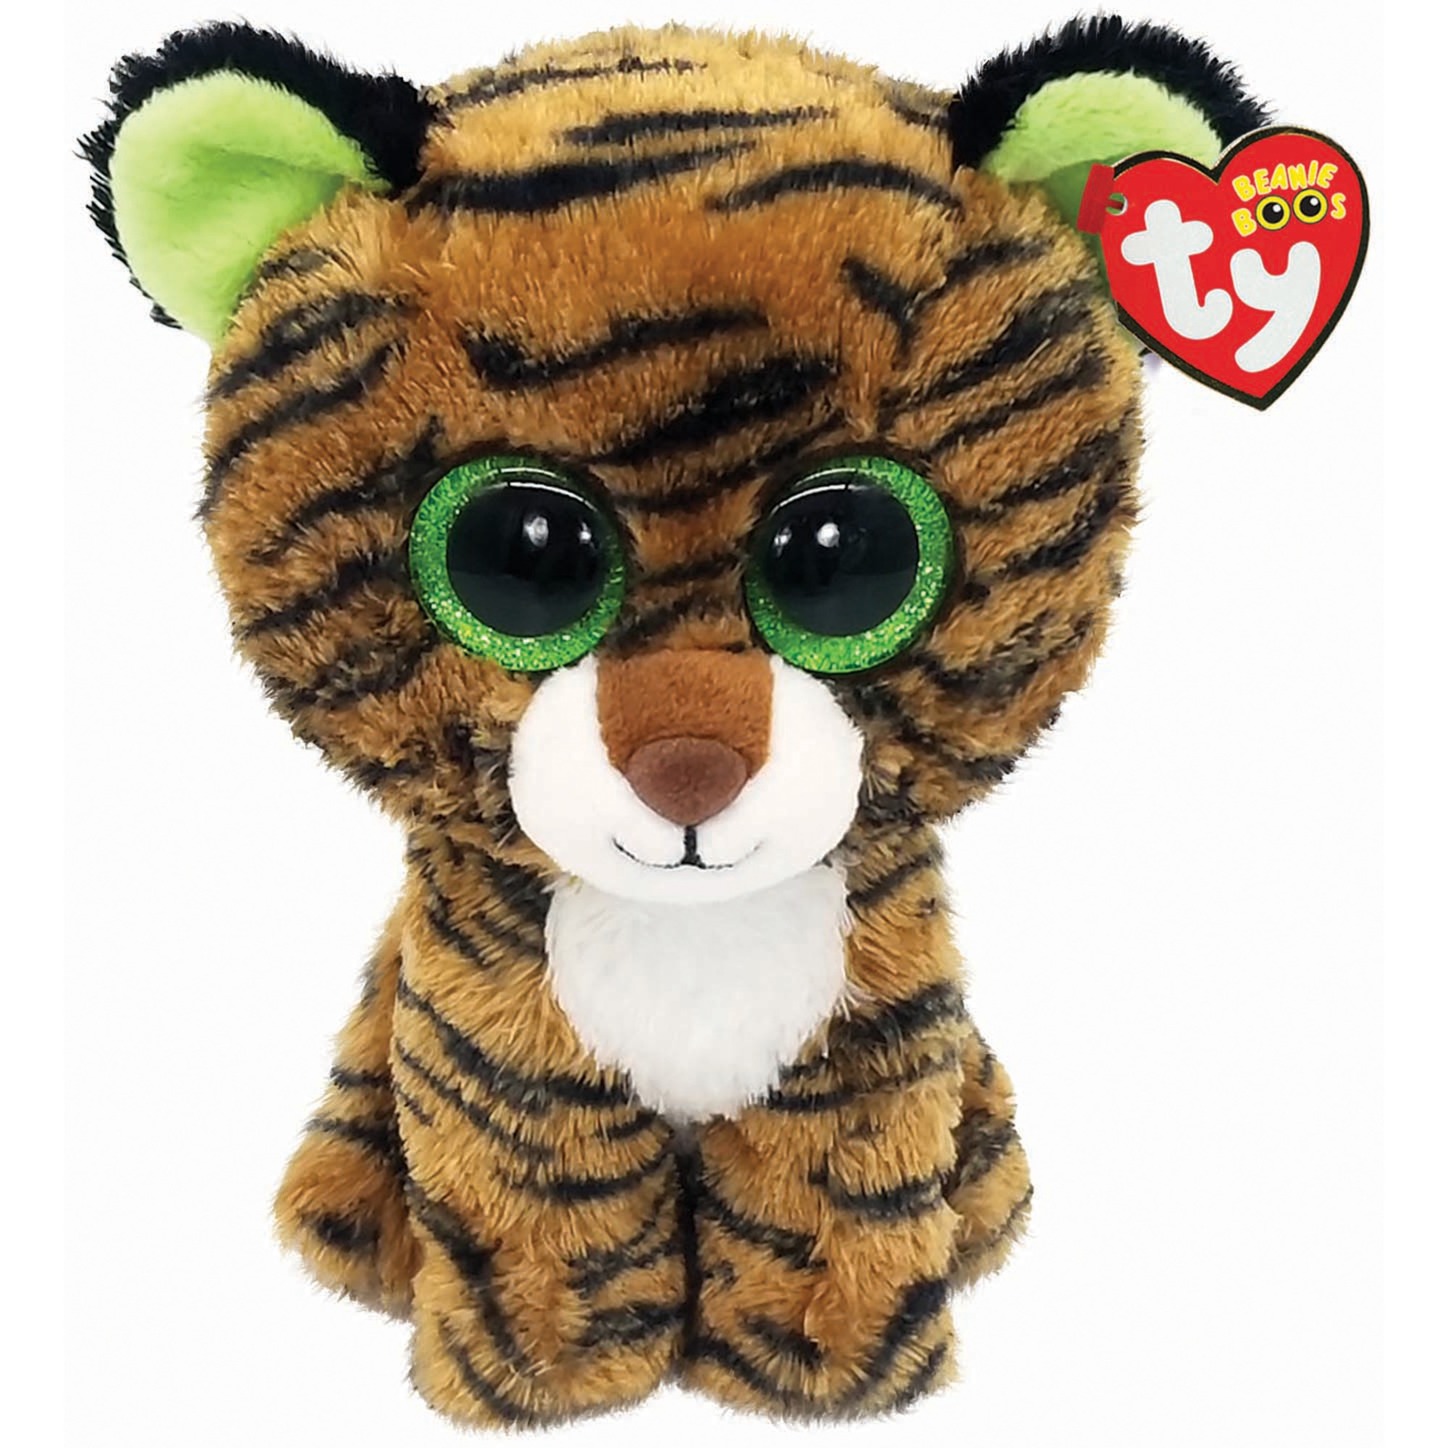 Image of Alternate - Beanie Boo Tiggy Tiger, Kuscheltier online einkaufen bei Alternate